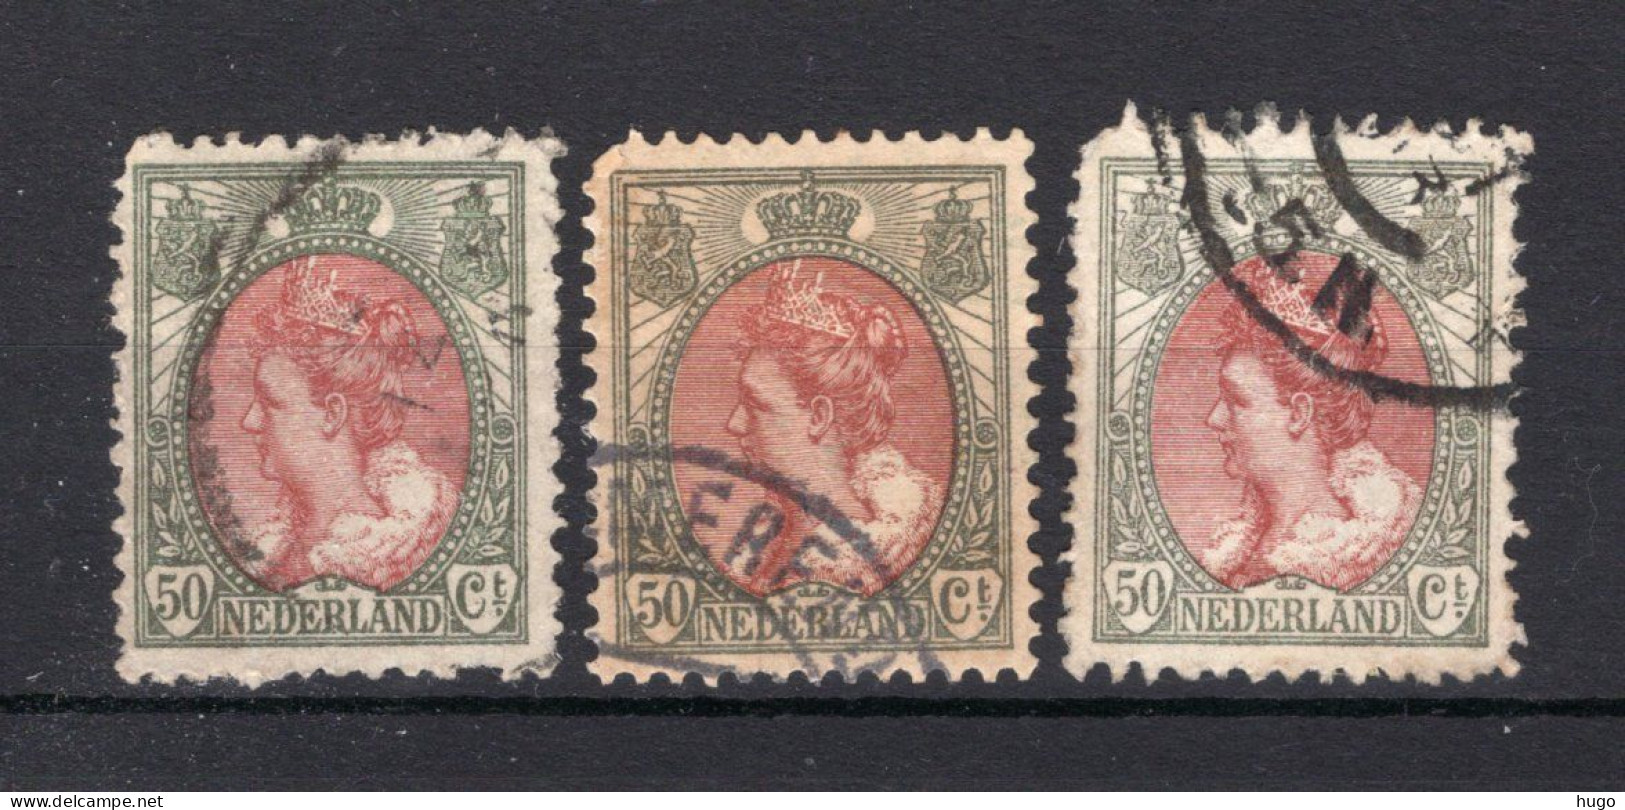 NEDERLAND 74 Gestempeld 1899 - Koningin Wilhelmina (3 Stuks) - Used Stamps